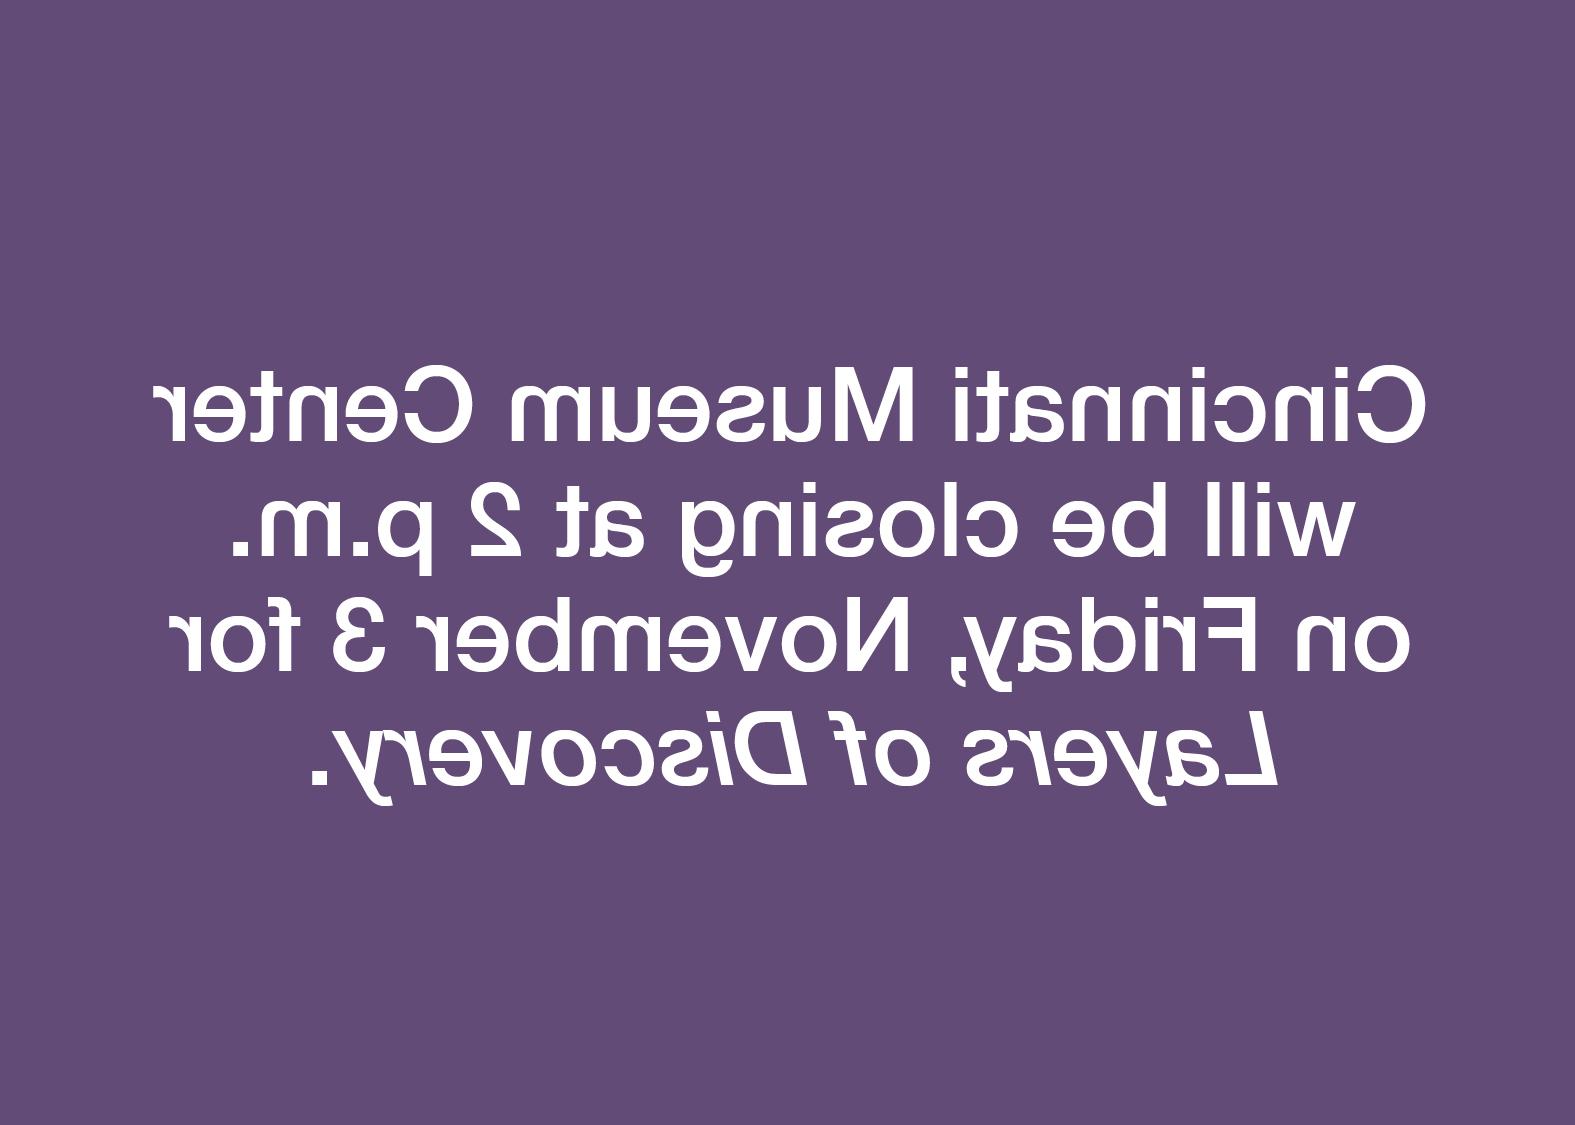 辛辛那提博物馆中心将于下午两点关闭.m. 11月3日周五的《层层发现.